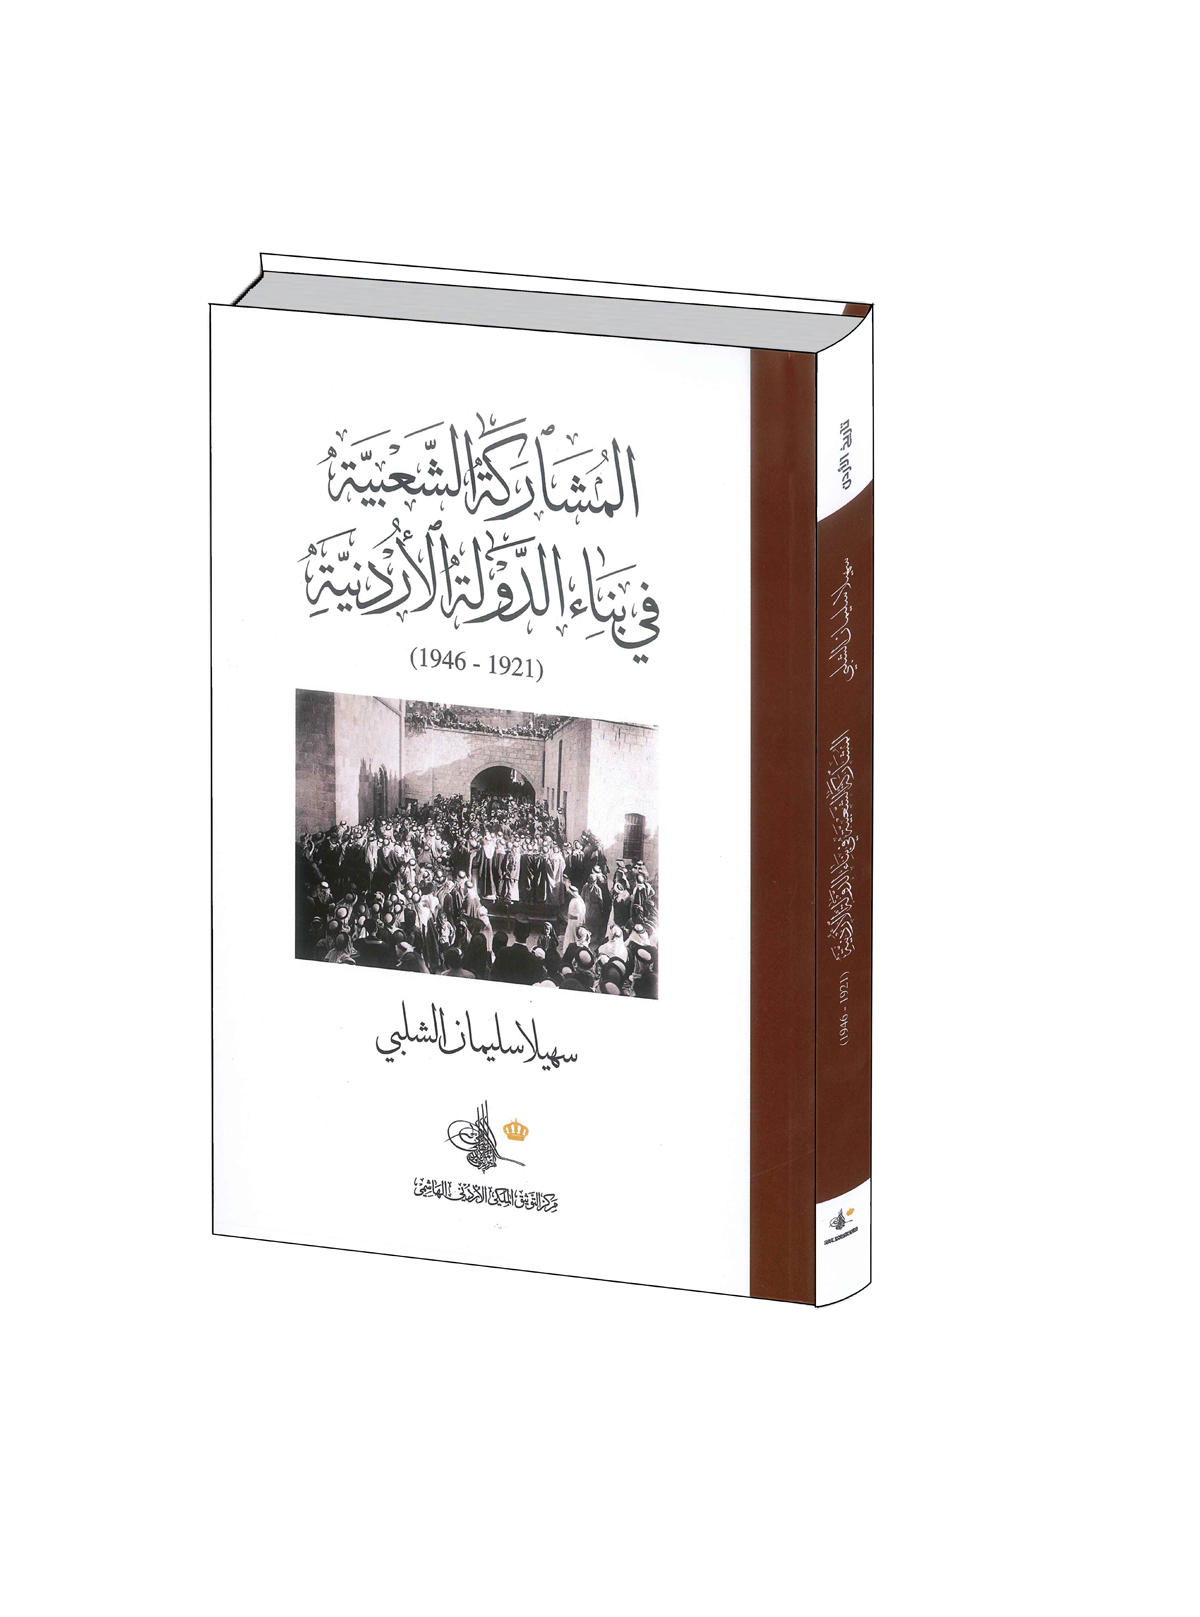 التوثيق الملكي يصدر كتاب المشاركة الشعبية في بناء الدولة الأردنية